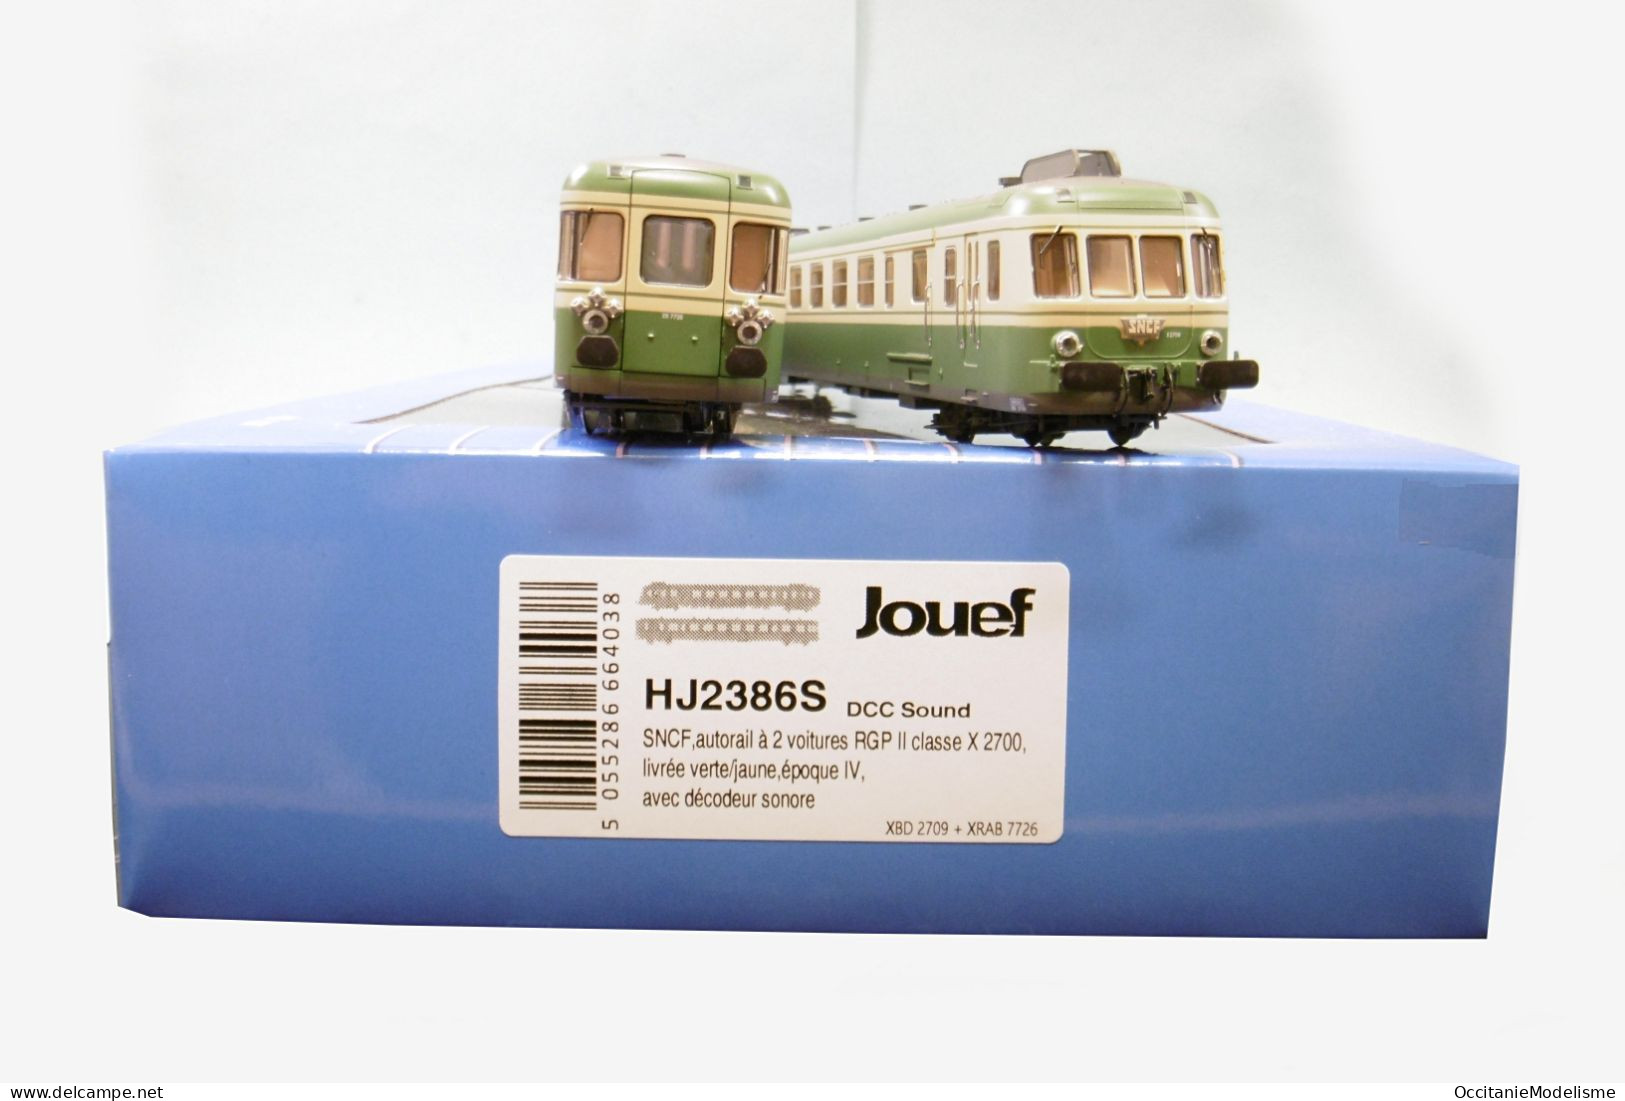 Jouef - AUTORAIL RGP II X 2709 X 2700 vert et crème ép. IV SNCF DCC Sound réf. HJ2386S Neuf NBO HO 1/87